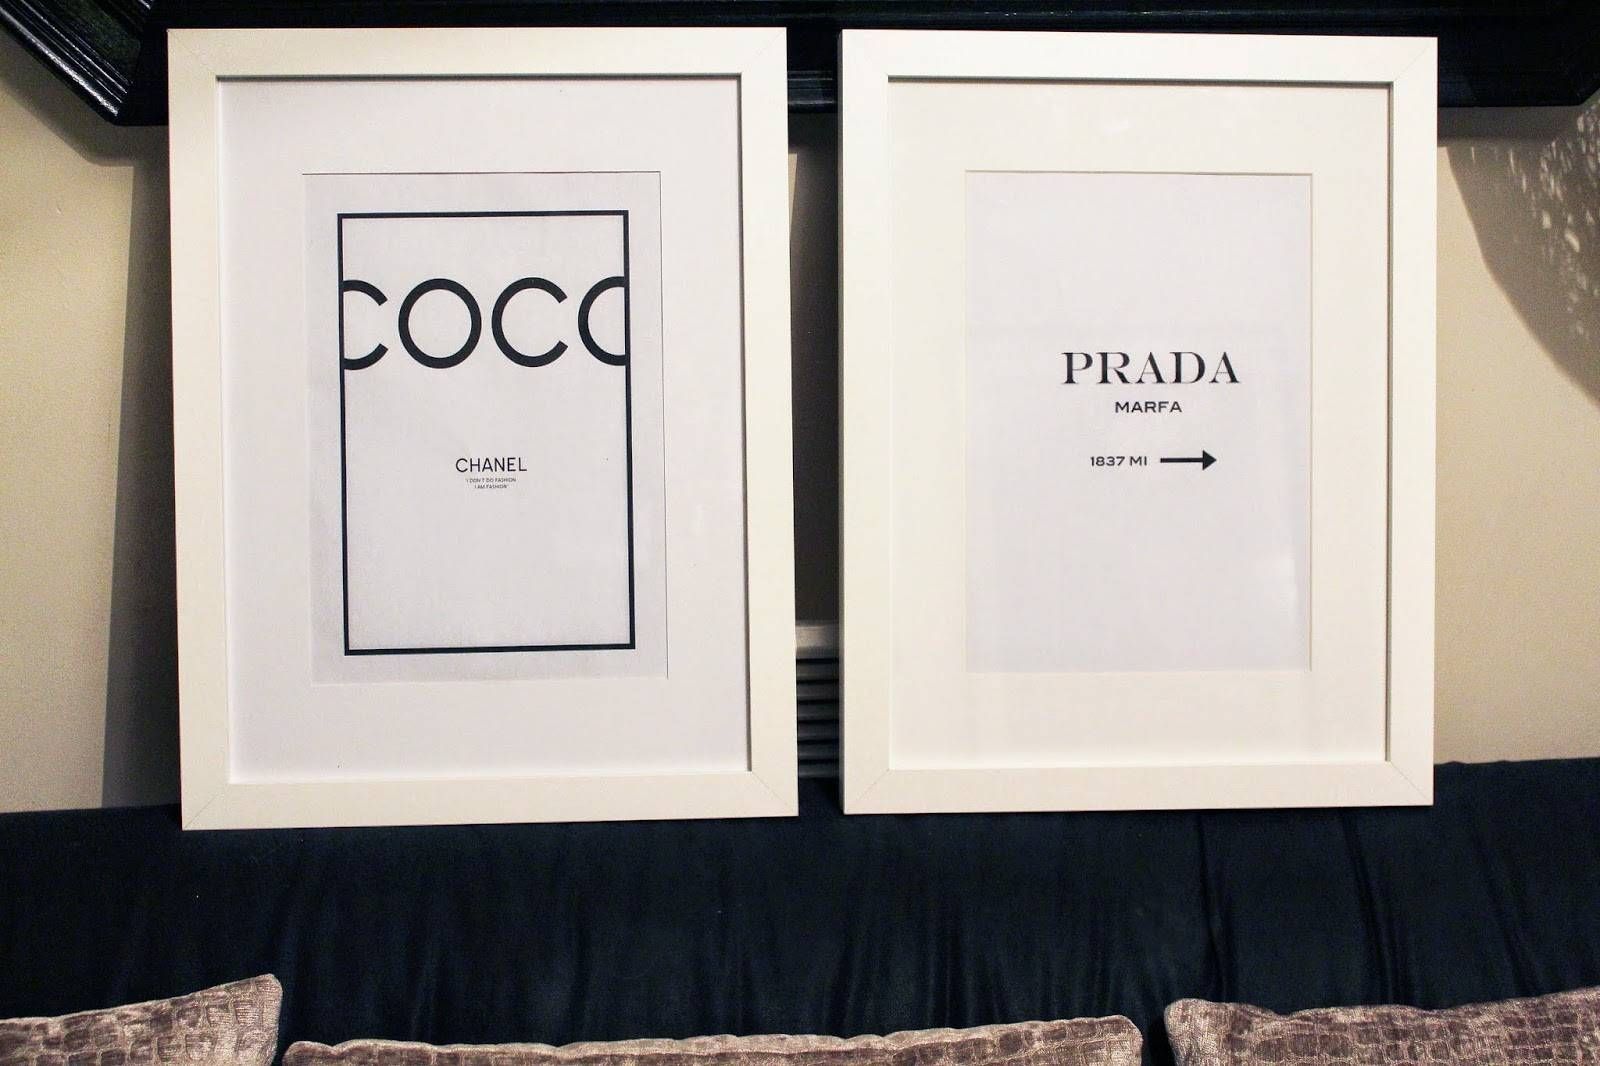 Diy Chanel | Prada Wall Art | Batb Inside Best And Newest Prada Wall Art (Gallery 25 of 25)